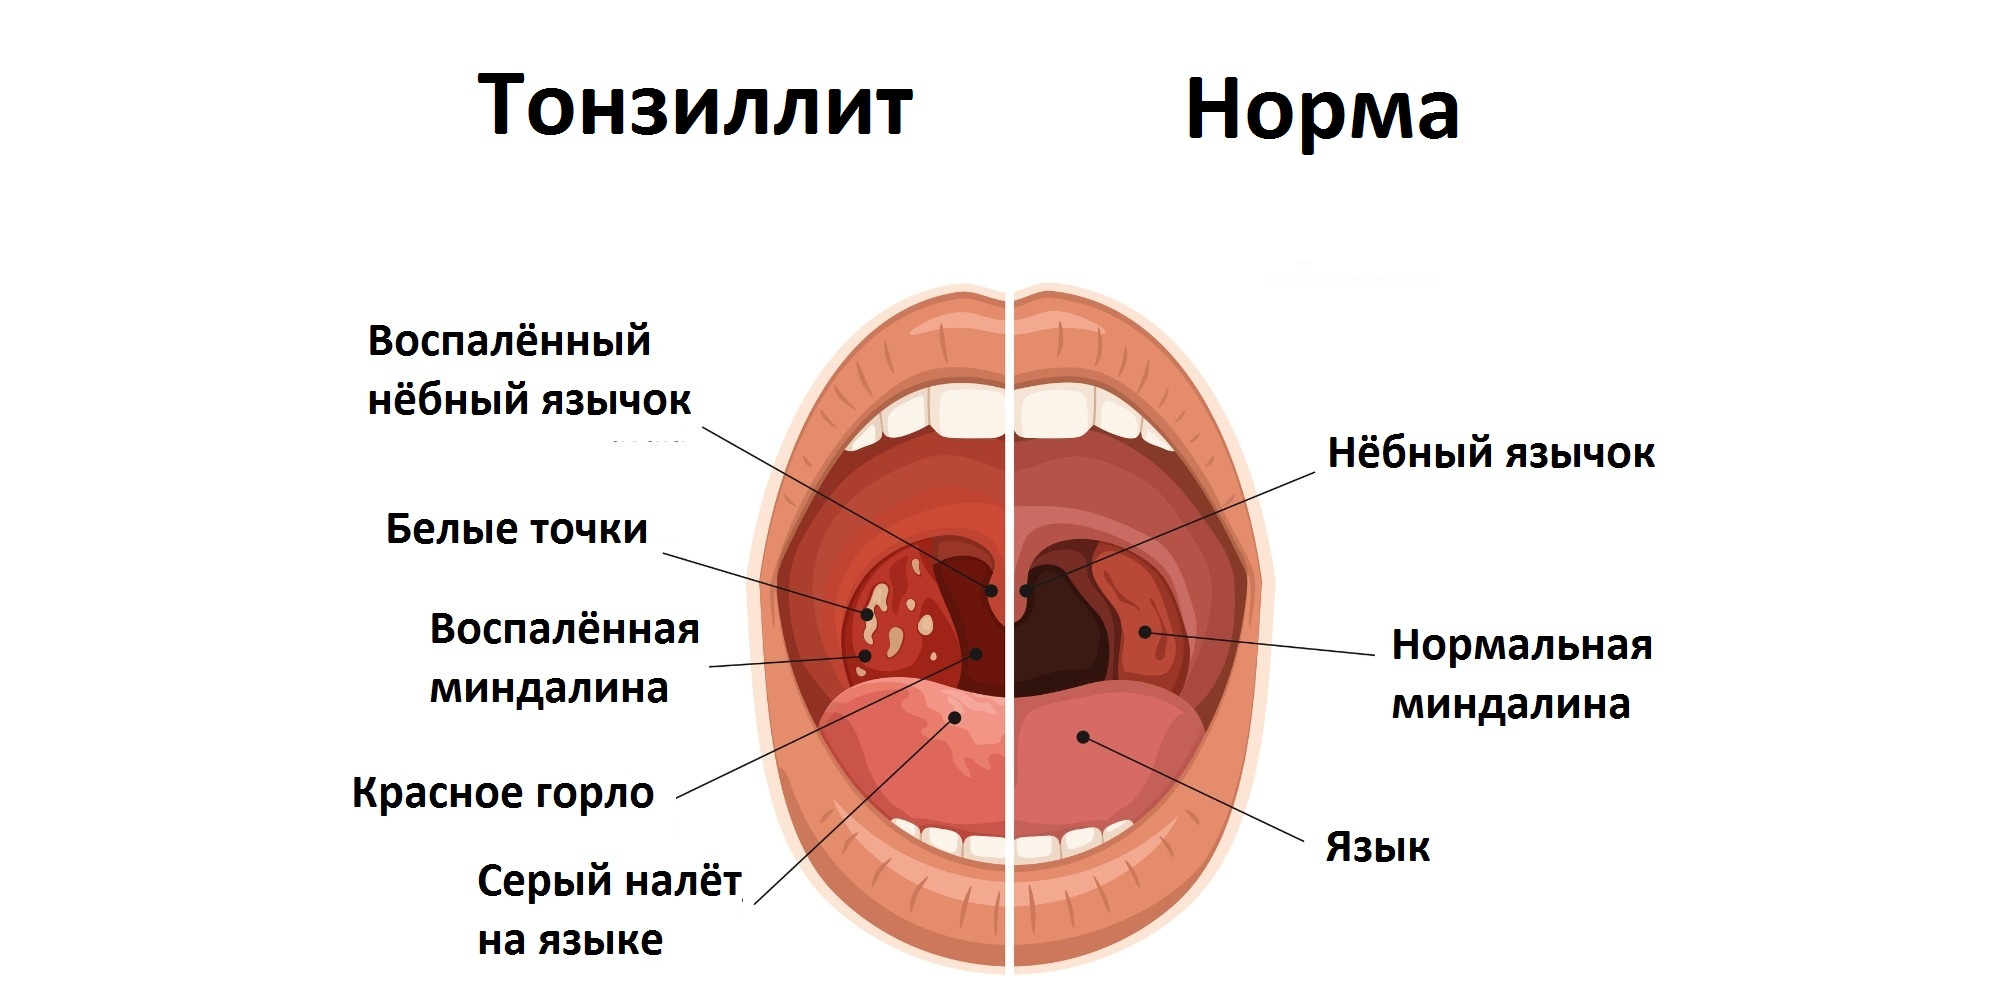 Хронический тонзиллит и нормальное состояние полости рта